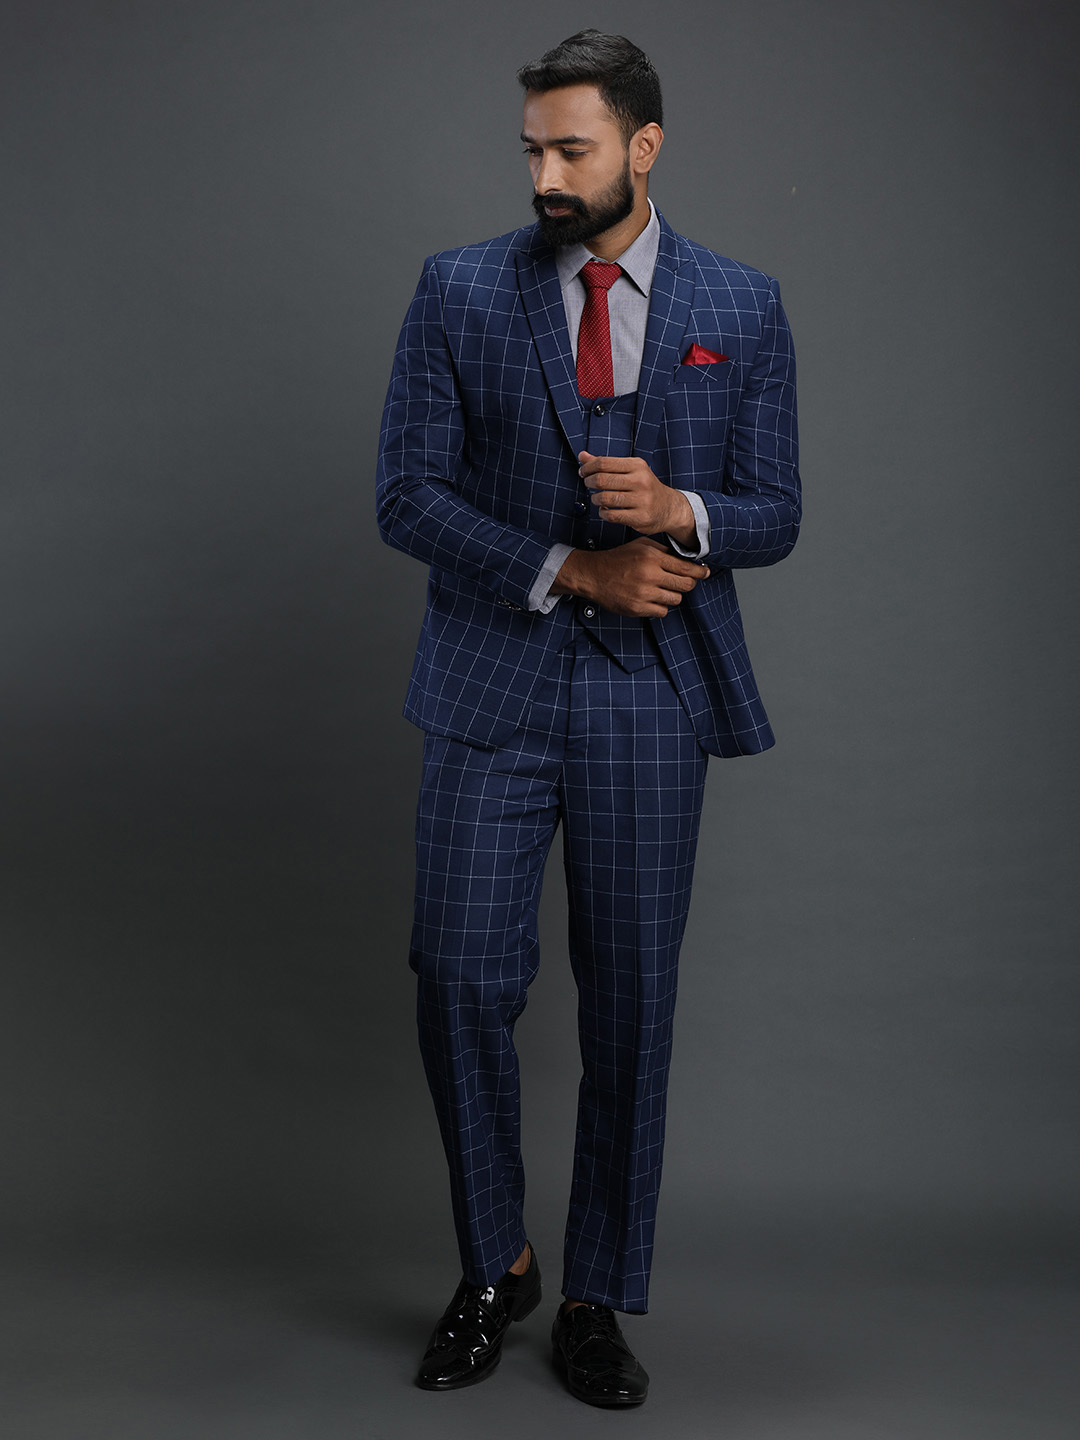 royal-blue-checks-3-piece-suit